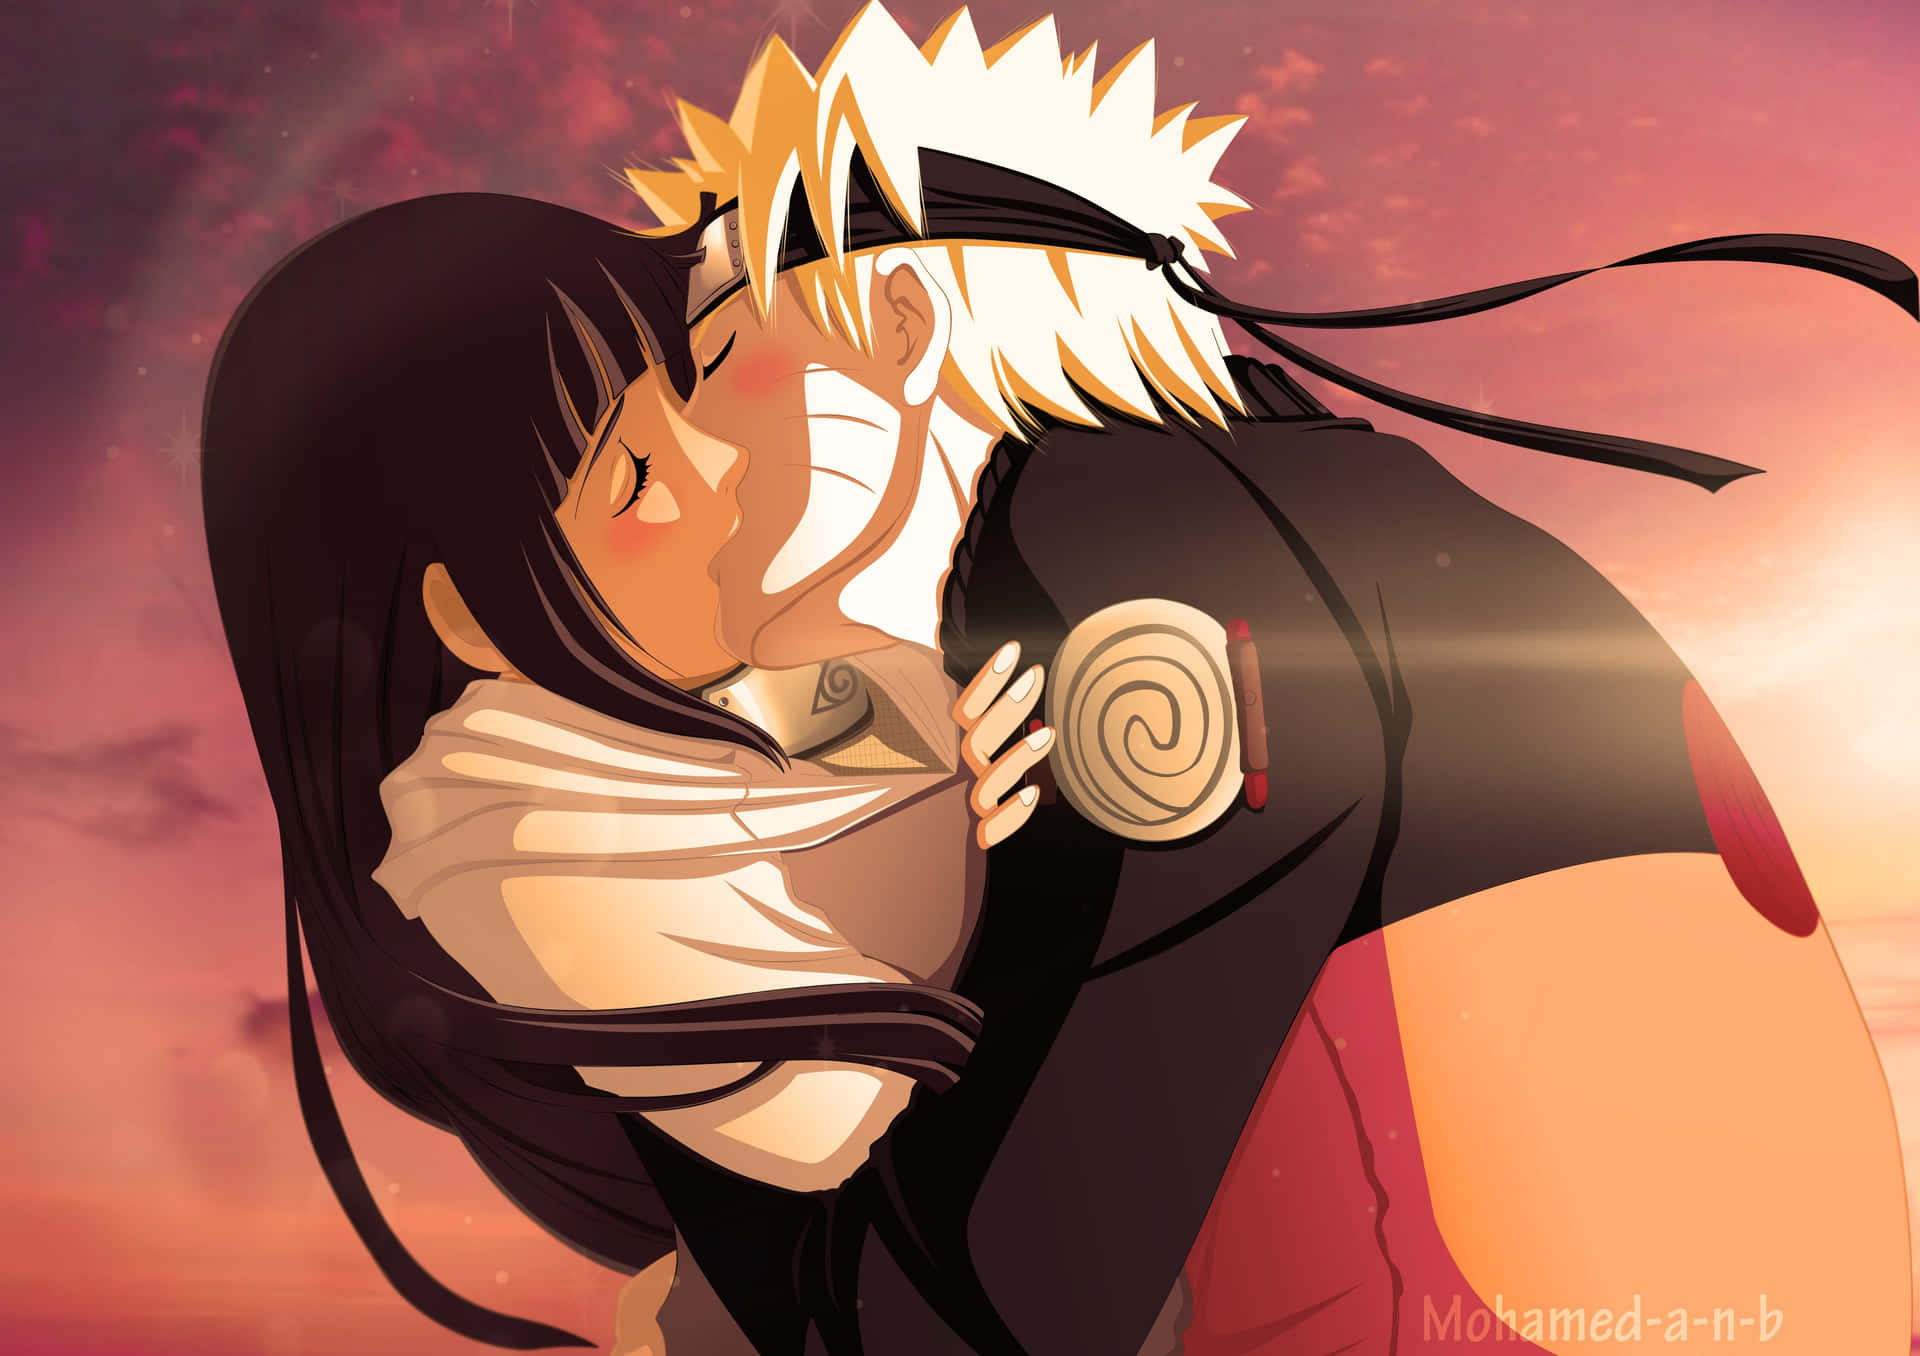 Naruto And Naruto - Kissing At Sunset Wallpaper